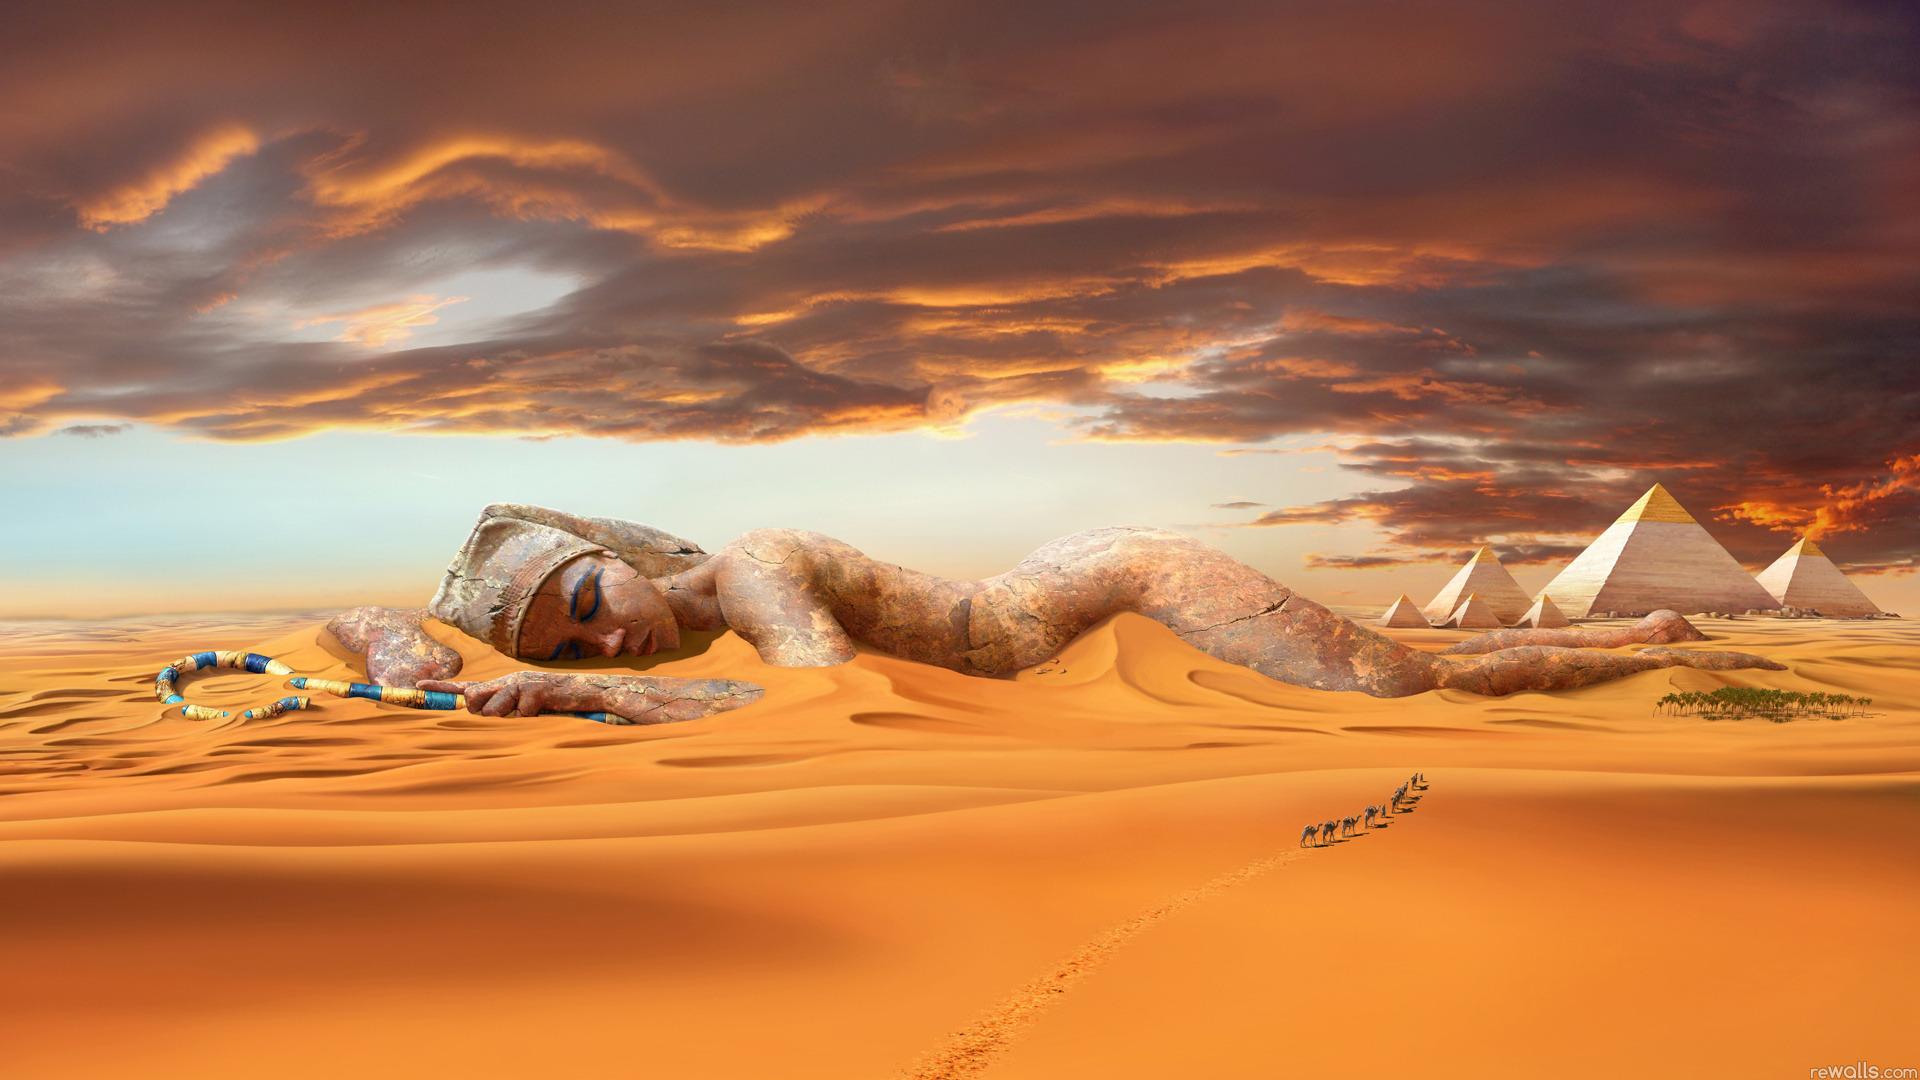 Пустыня, песок, дюны, караван, верблюды, пирамиды, статуя 1920x1080